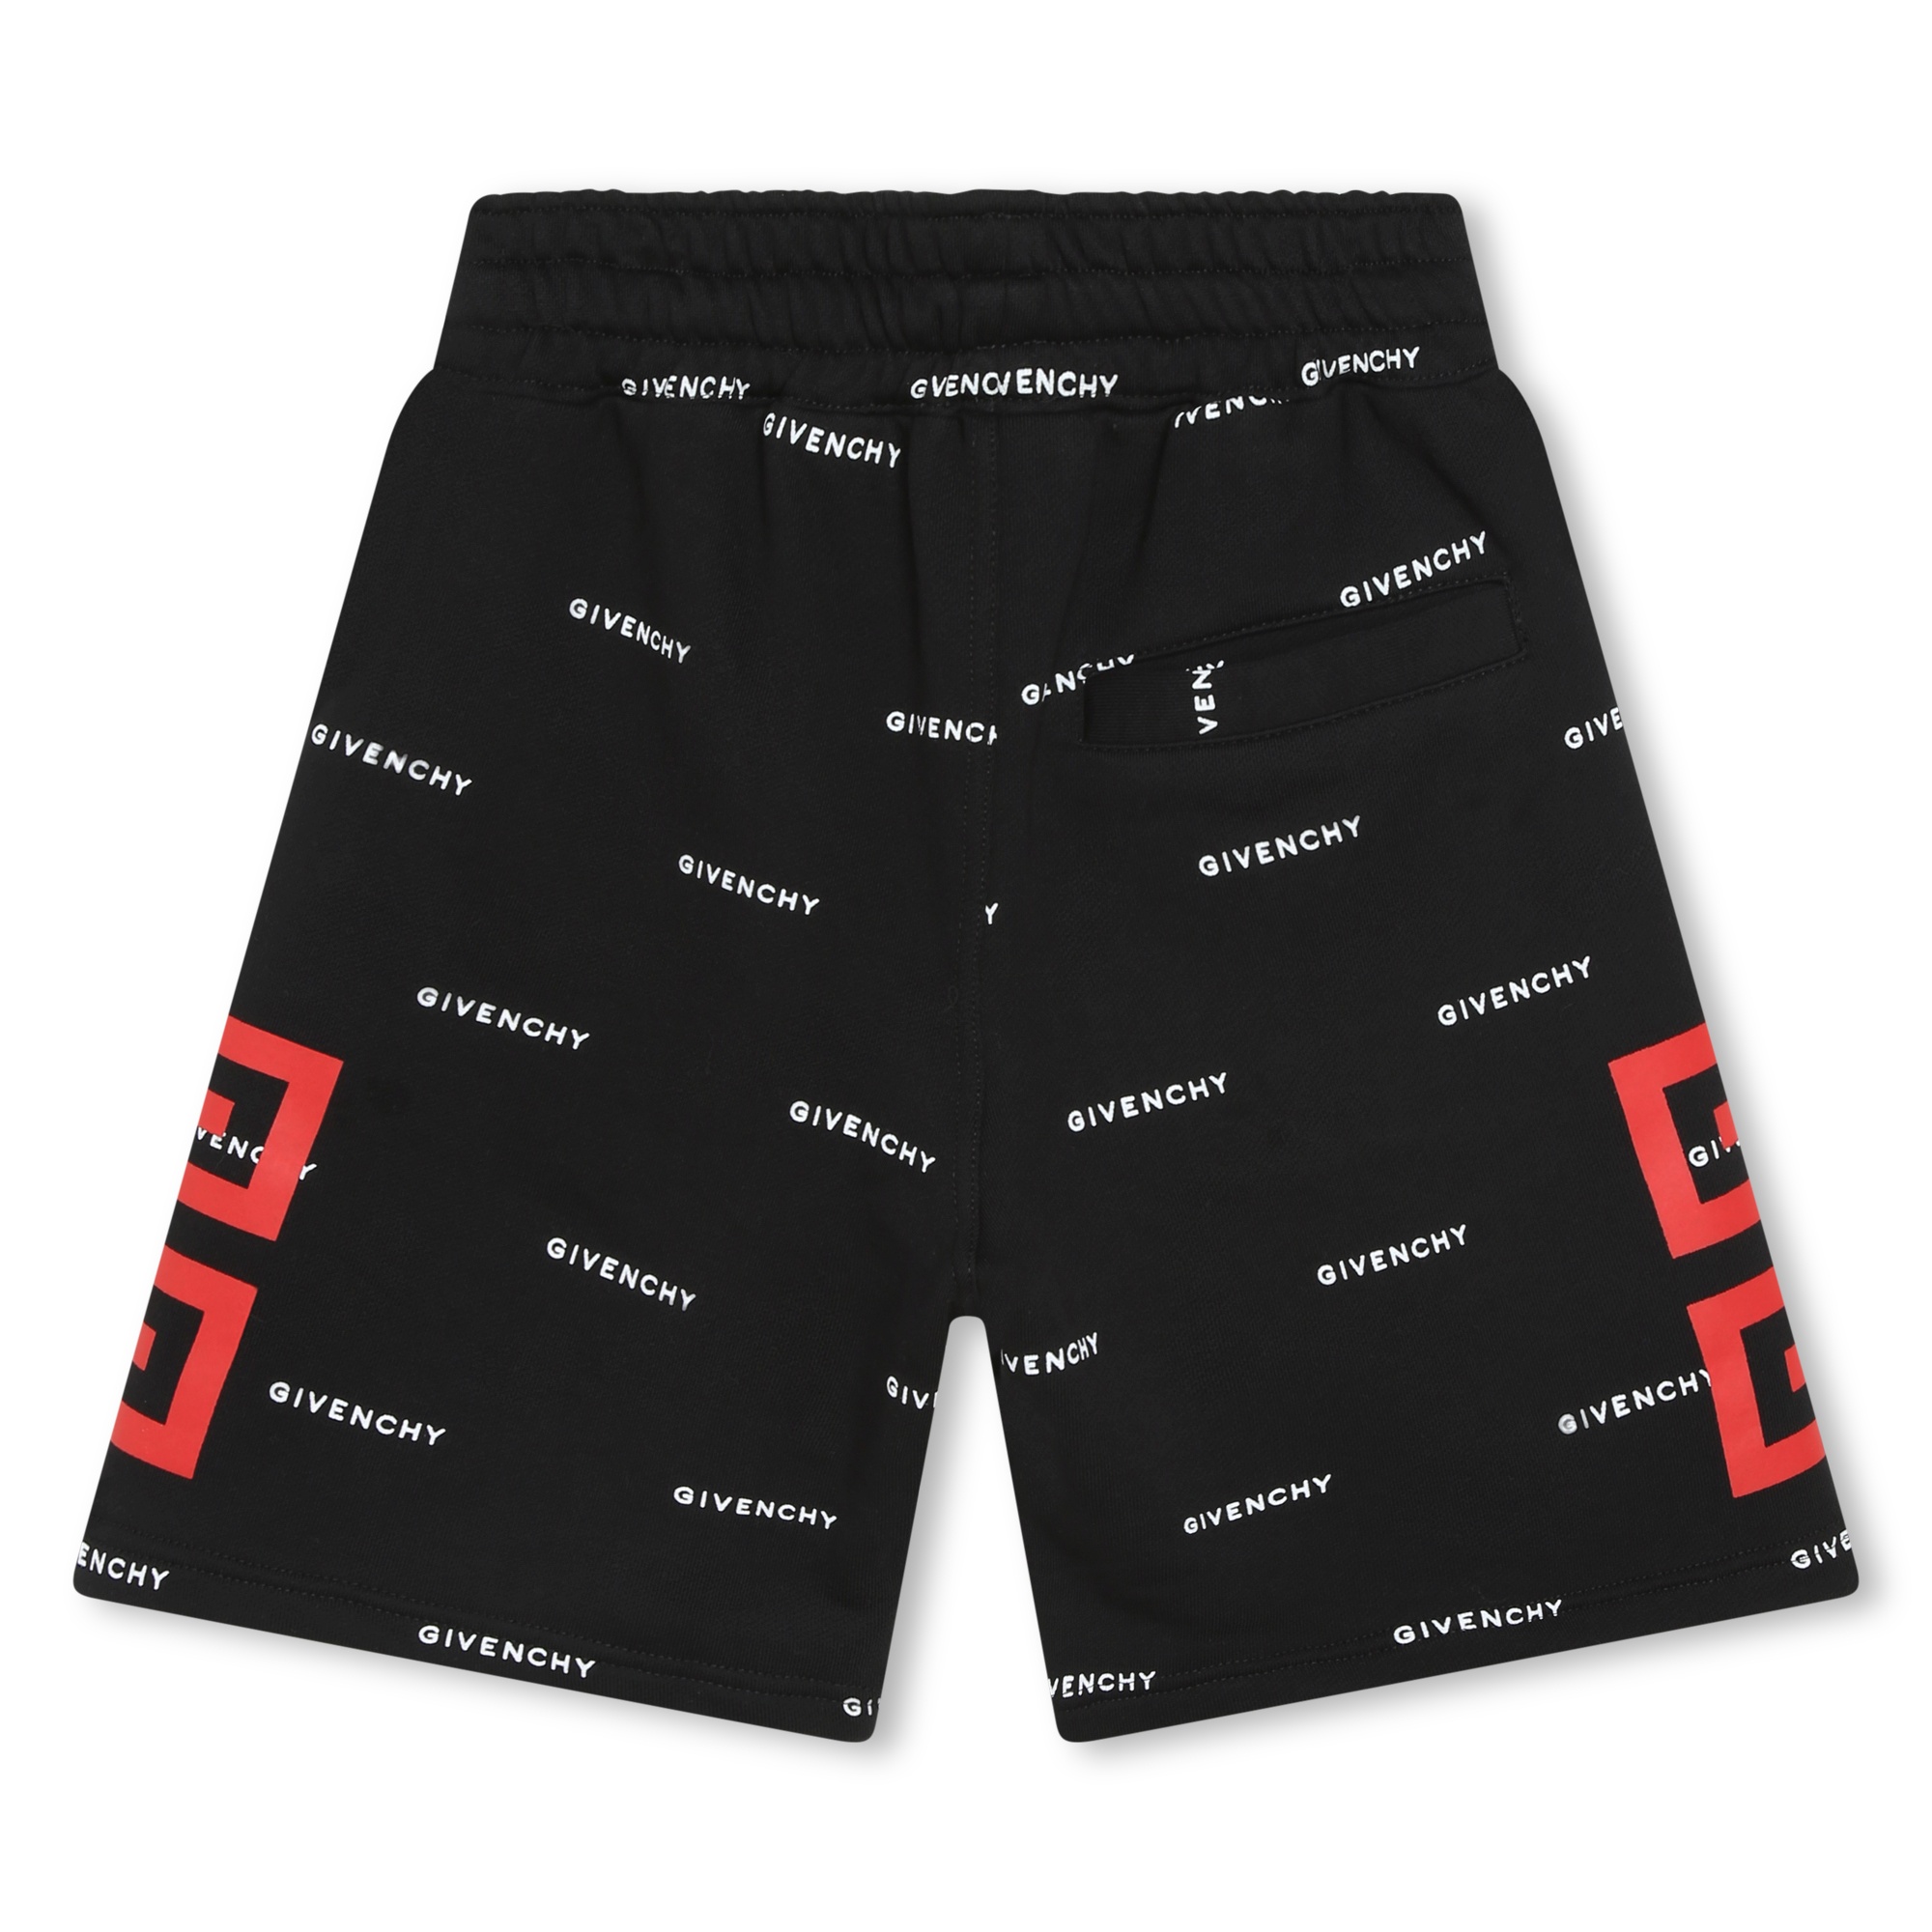 Bermuda-shorts aus molton GIVENCHY Für JUNGE